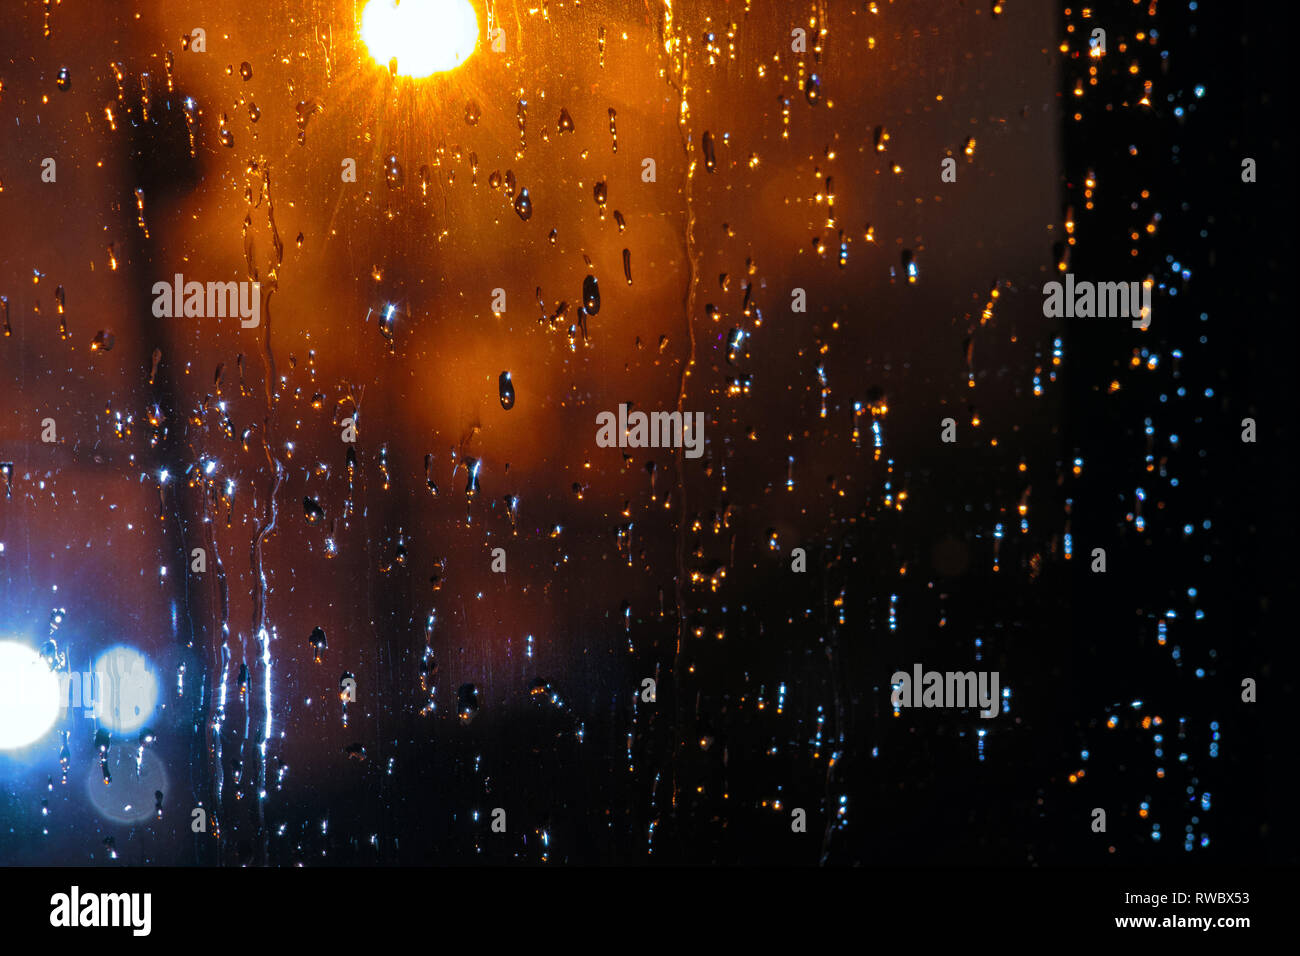 Gouttes de pluie sur un verre sur fond mis en évidence par la lampe de poche. Gouttes d'eau sur une fenêtre en verre Banque D'Images